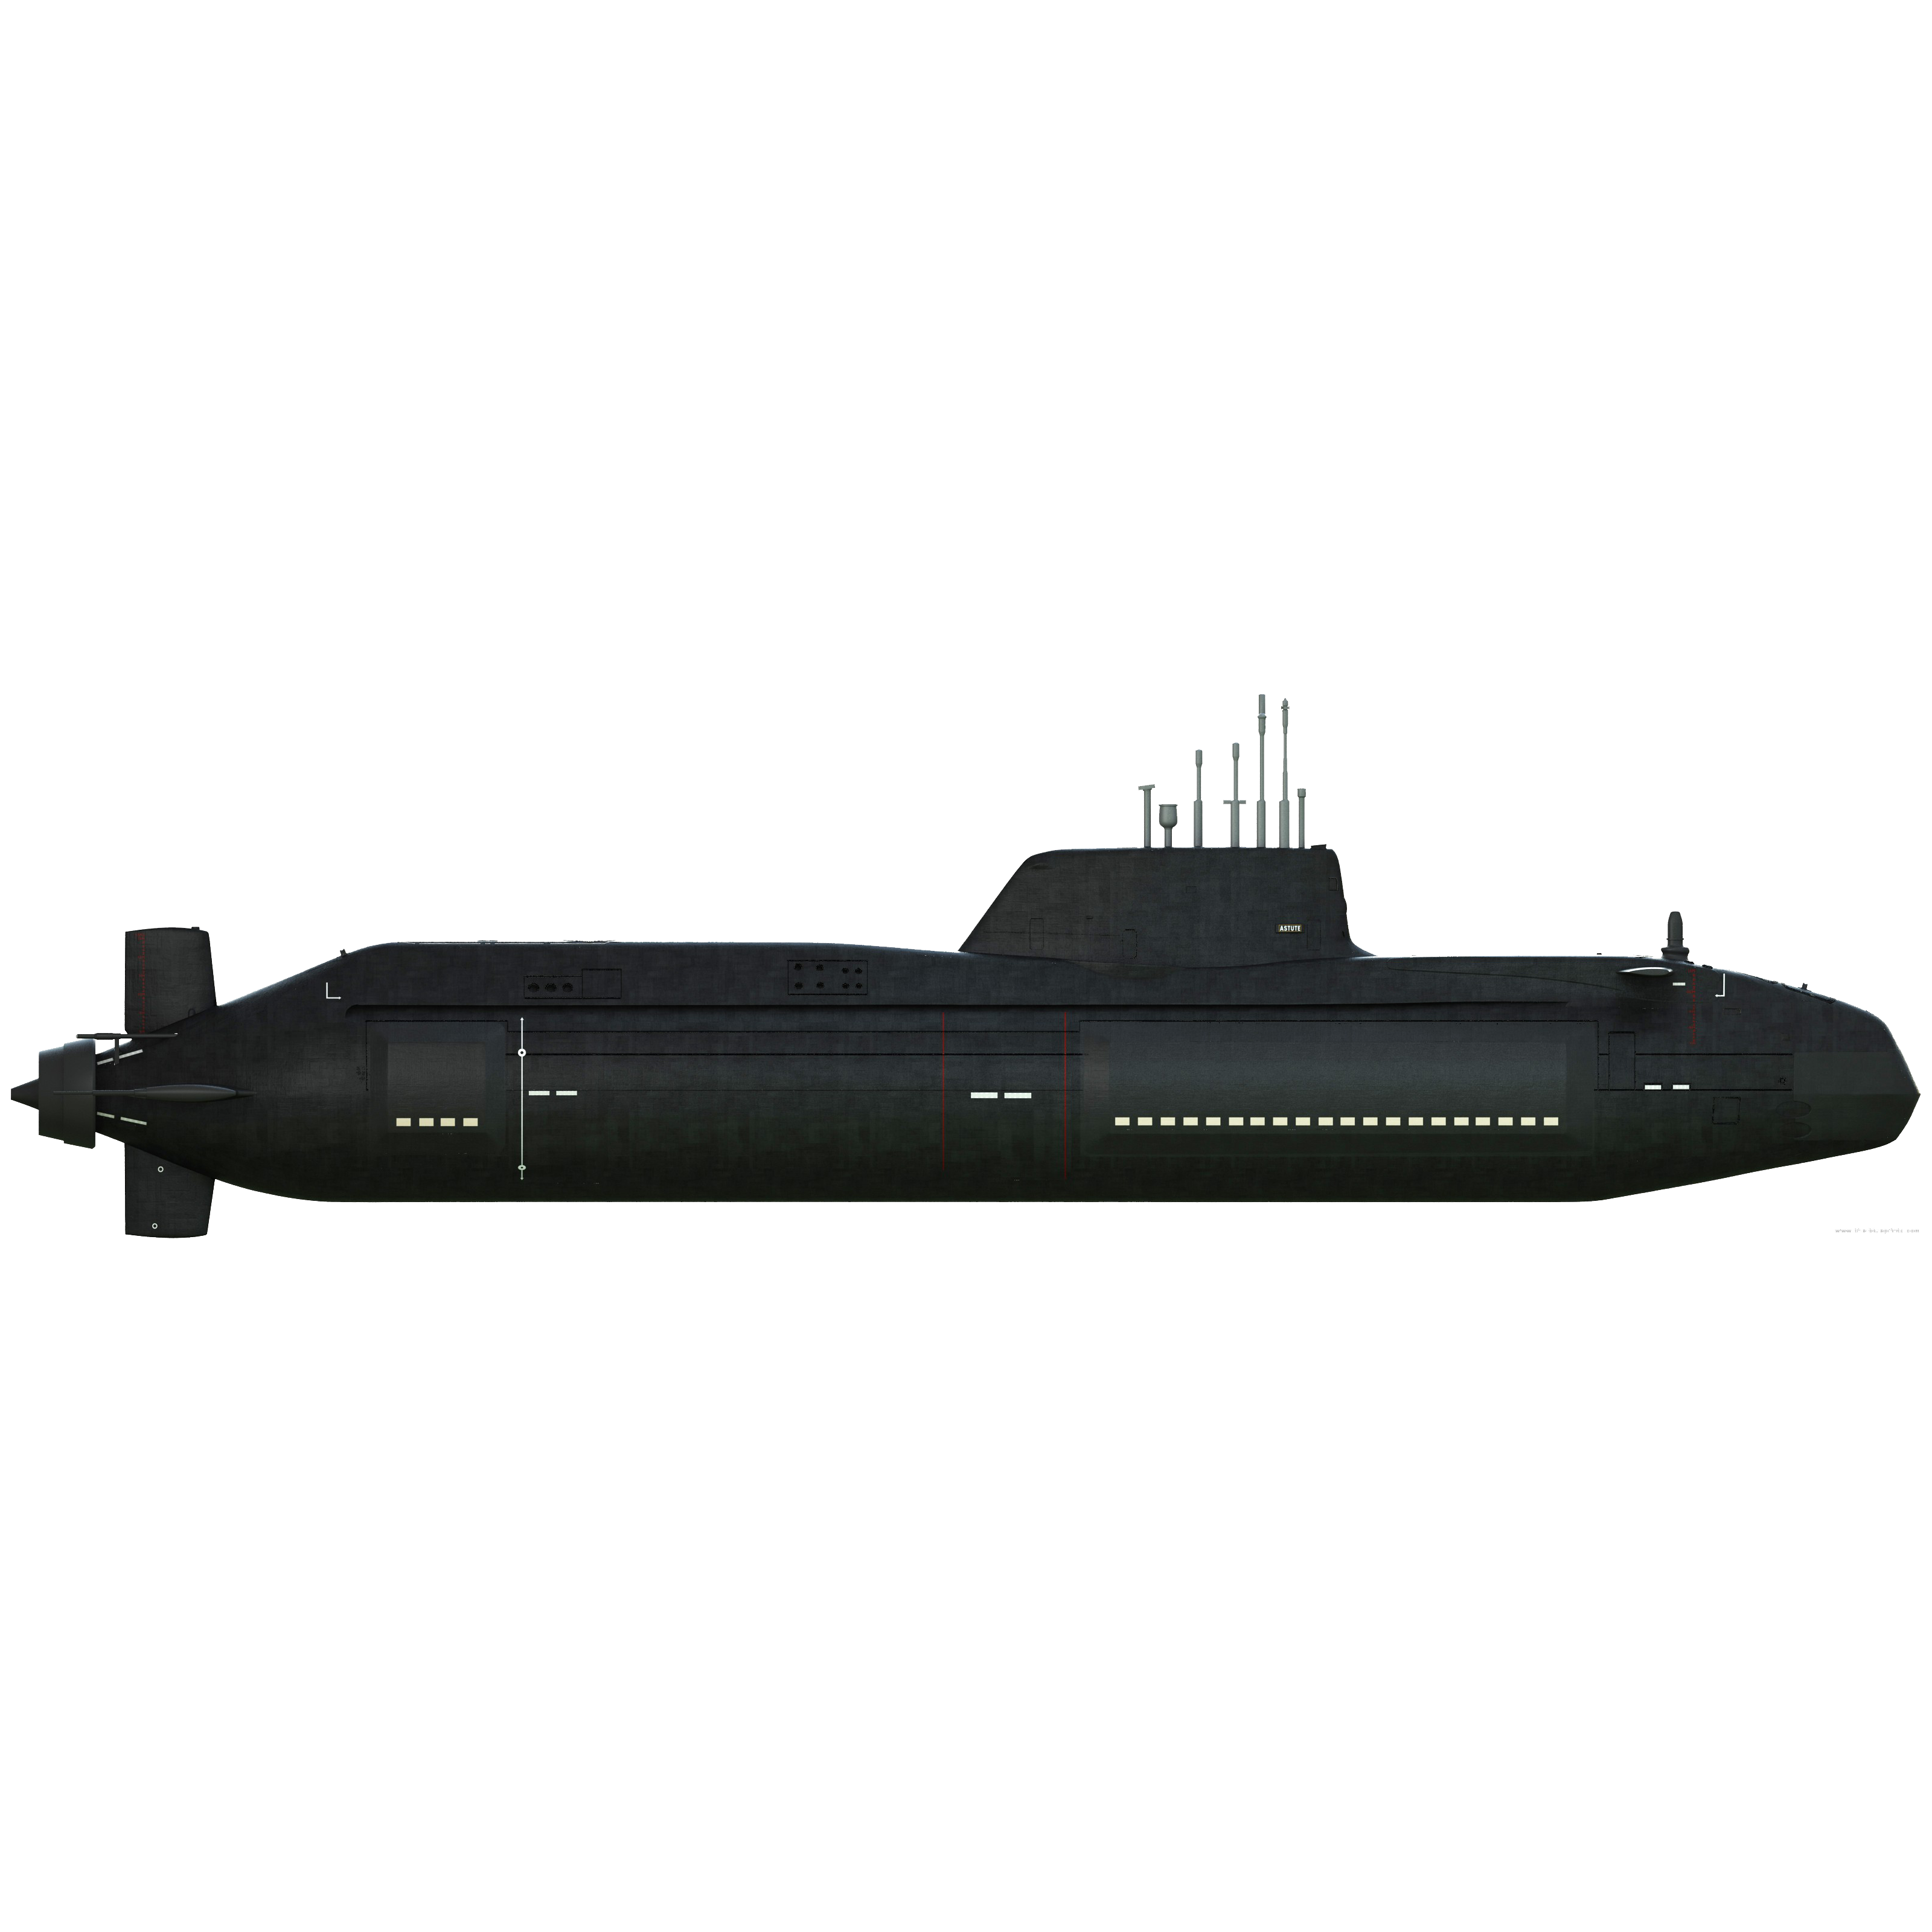 Submarine Transparent Picture